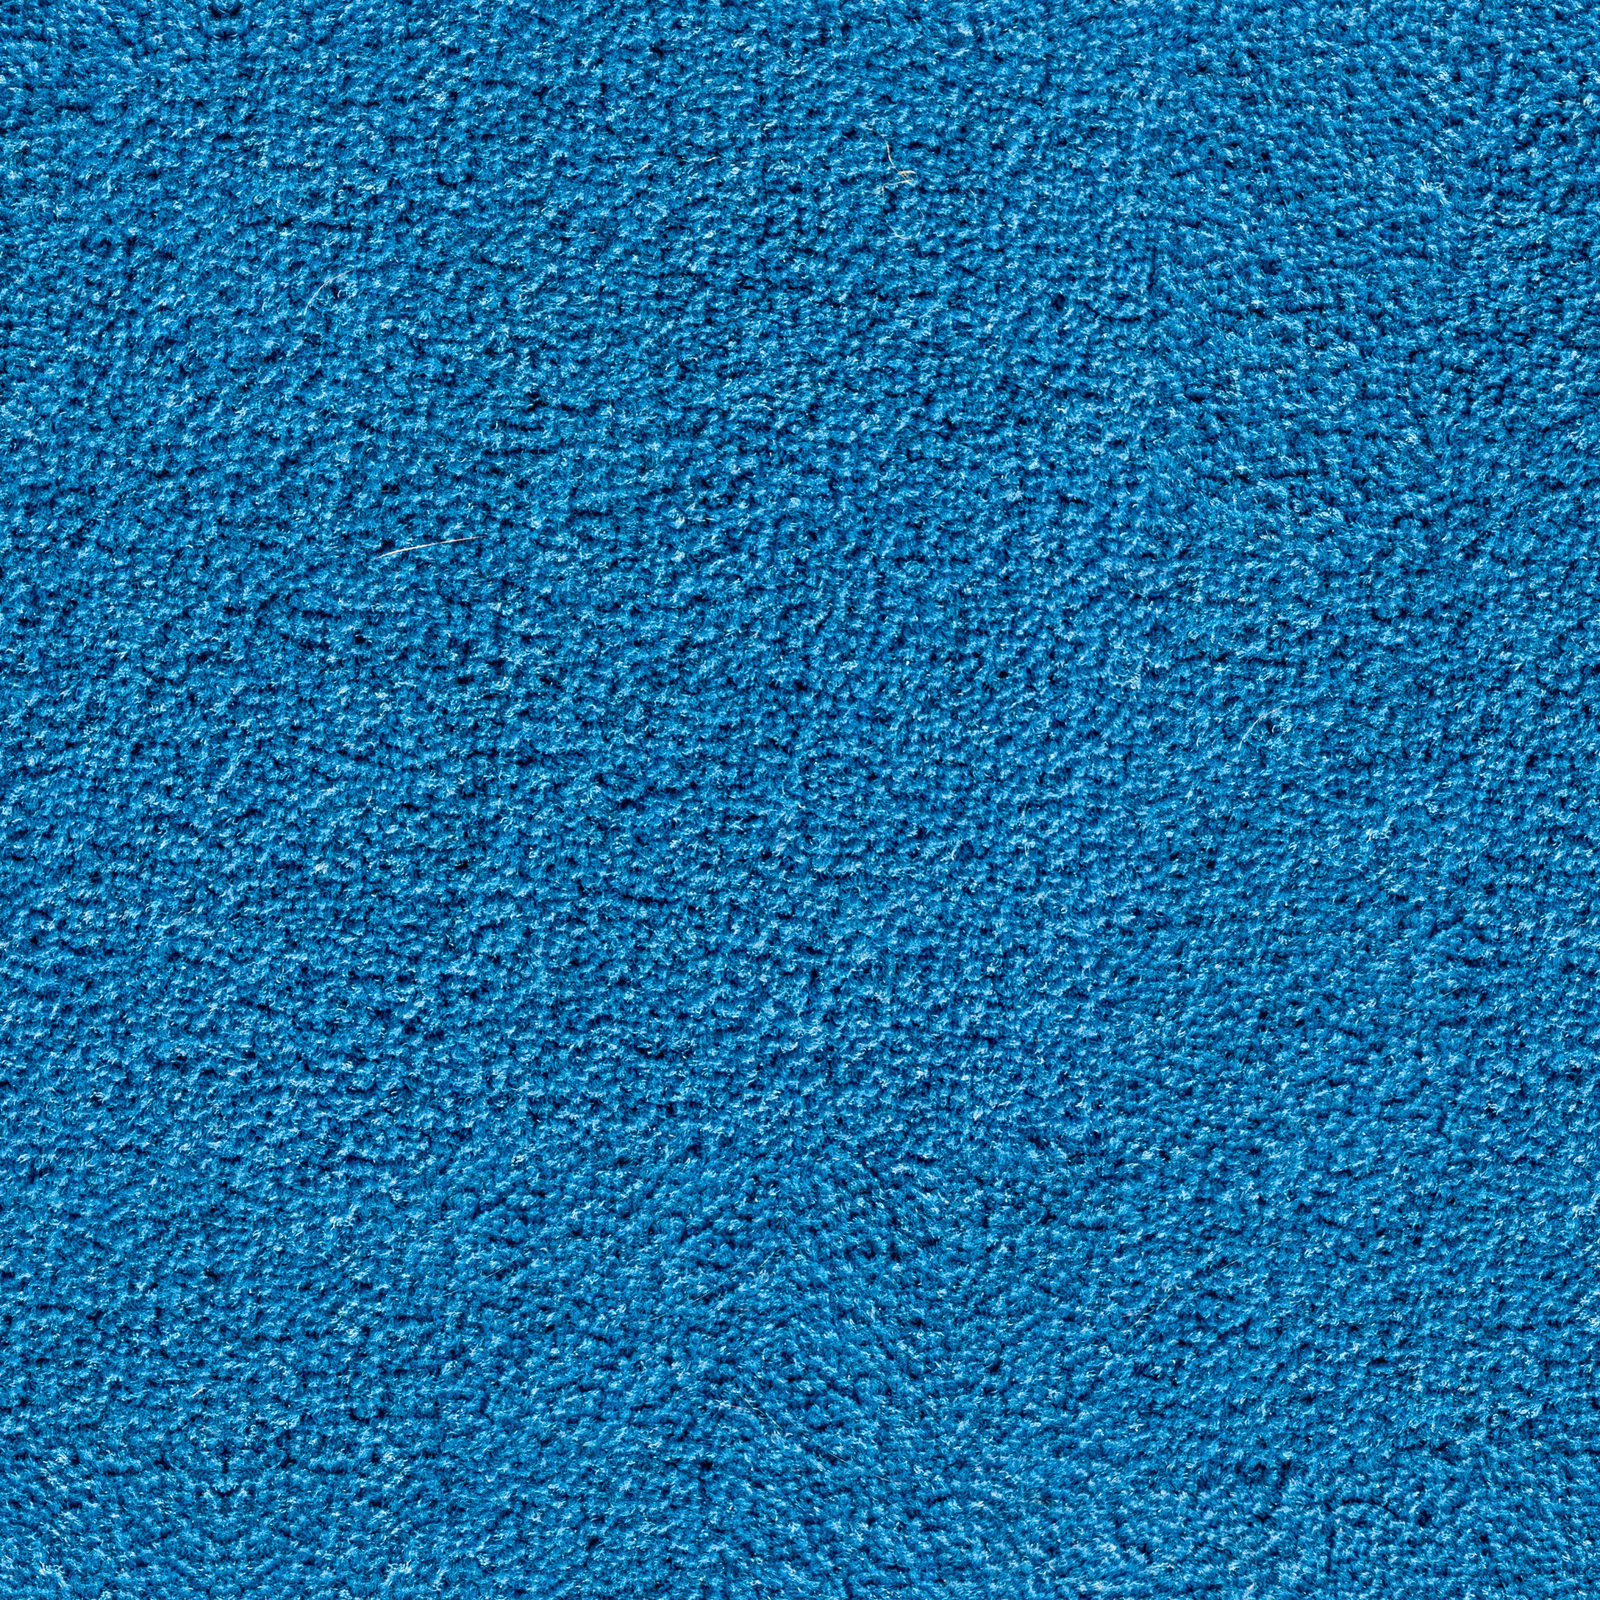 Carpet Texture Photo - Carpet Vidalondon